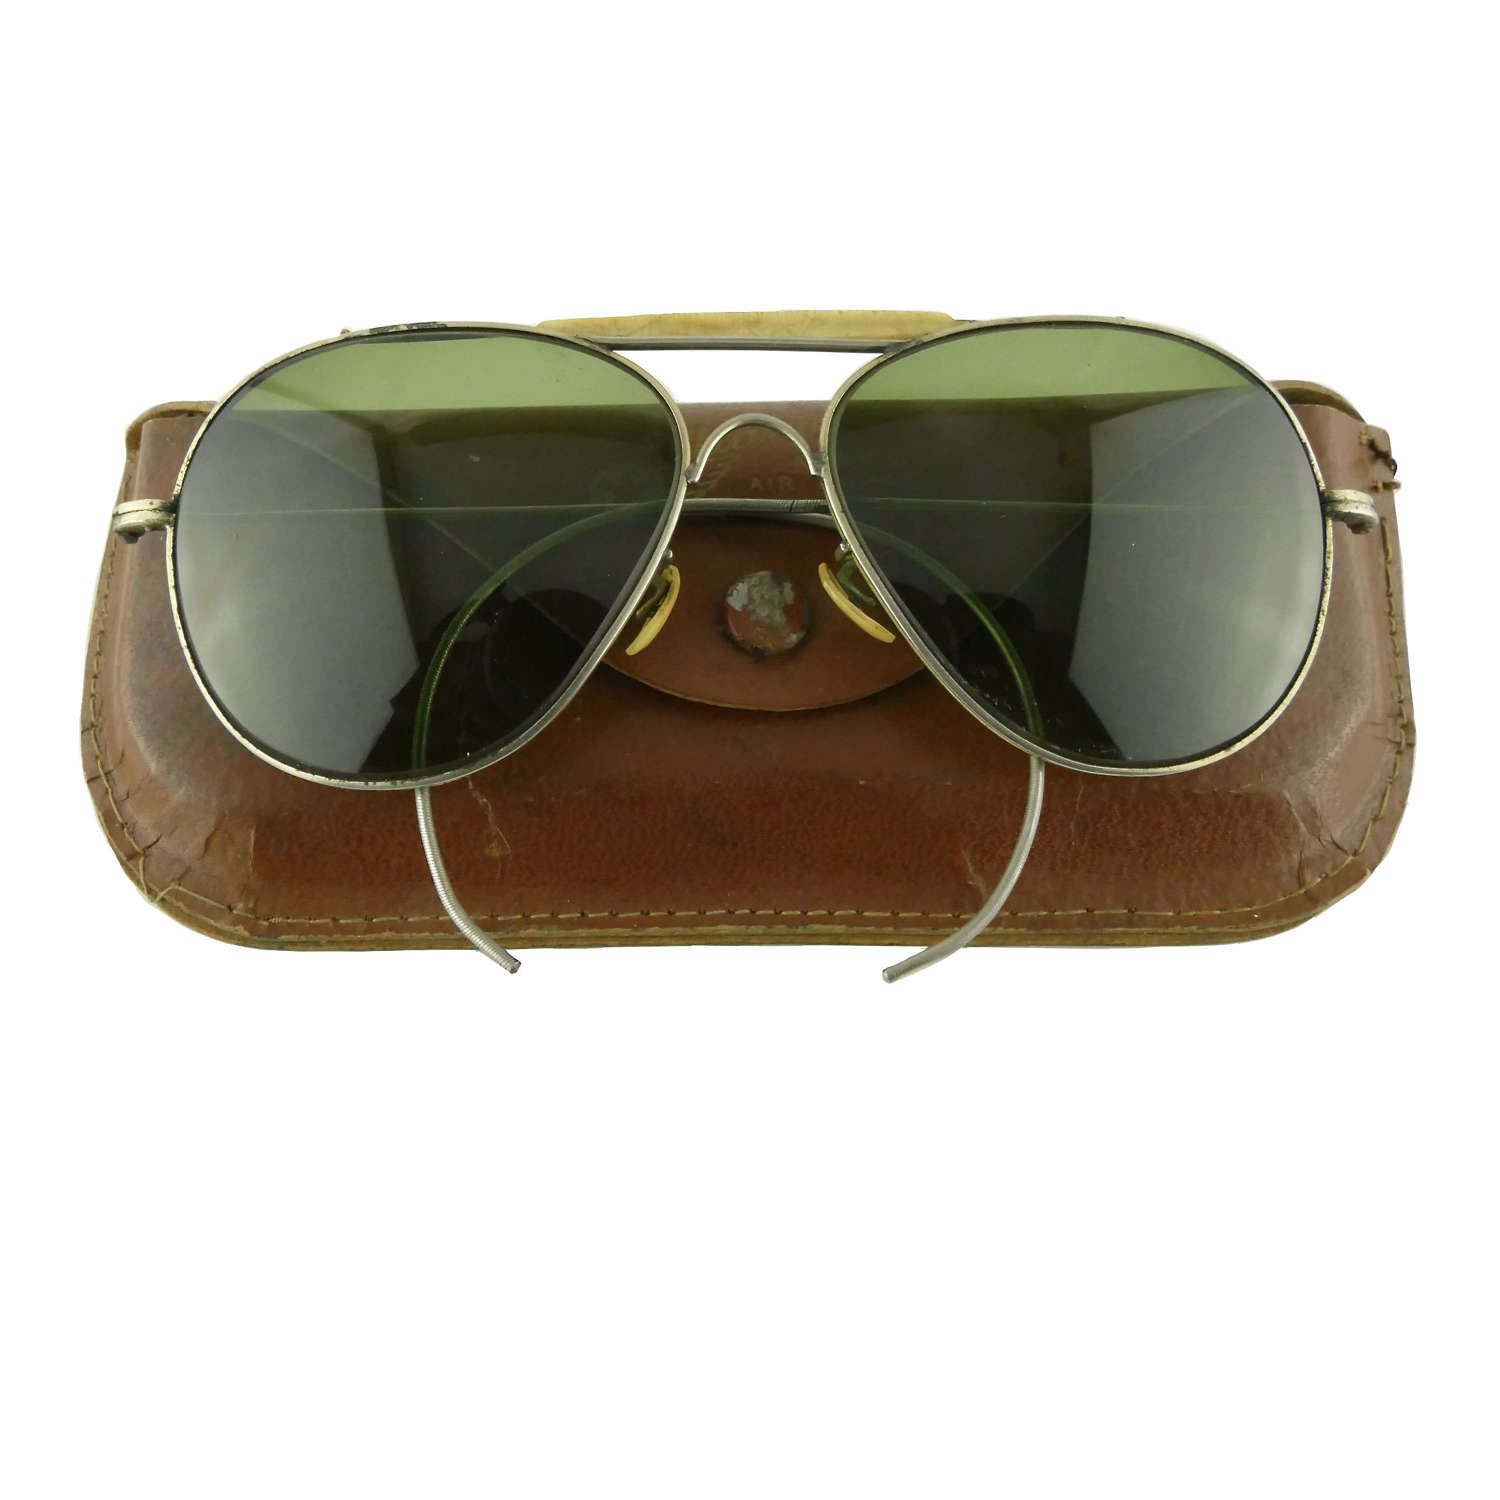 USAAF type sunglasses, cased